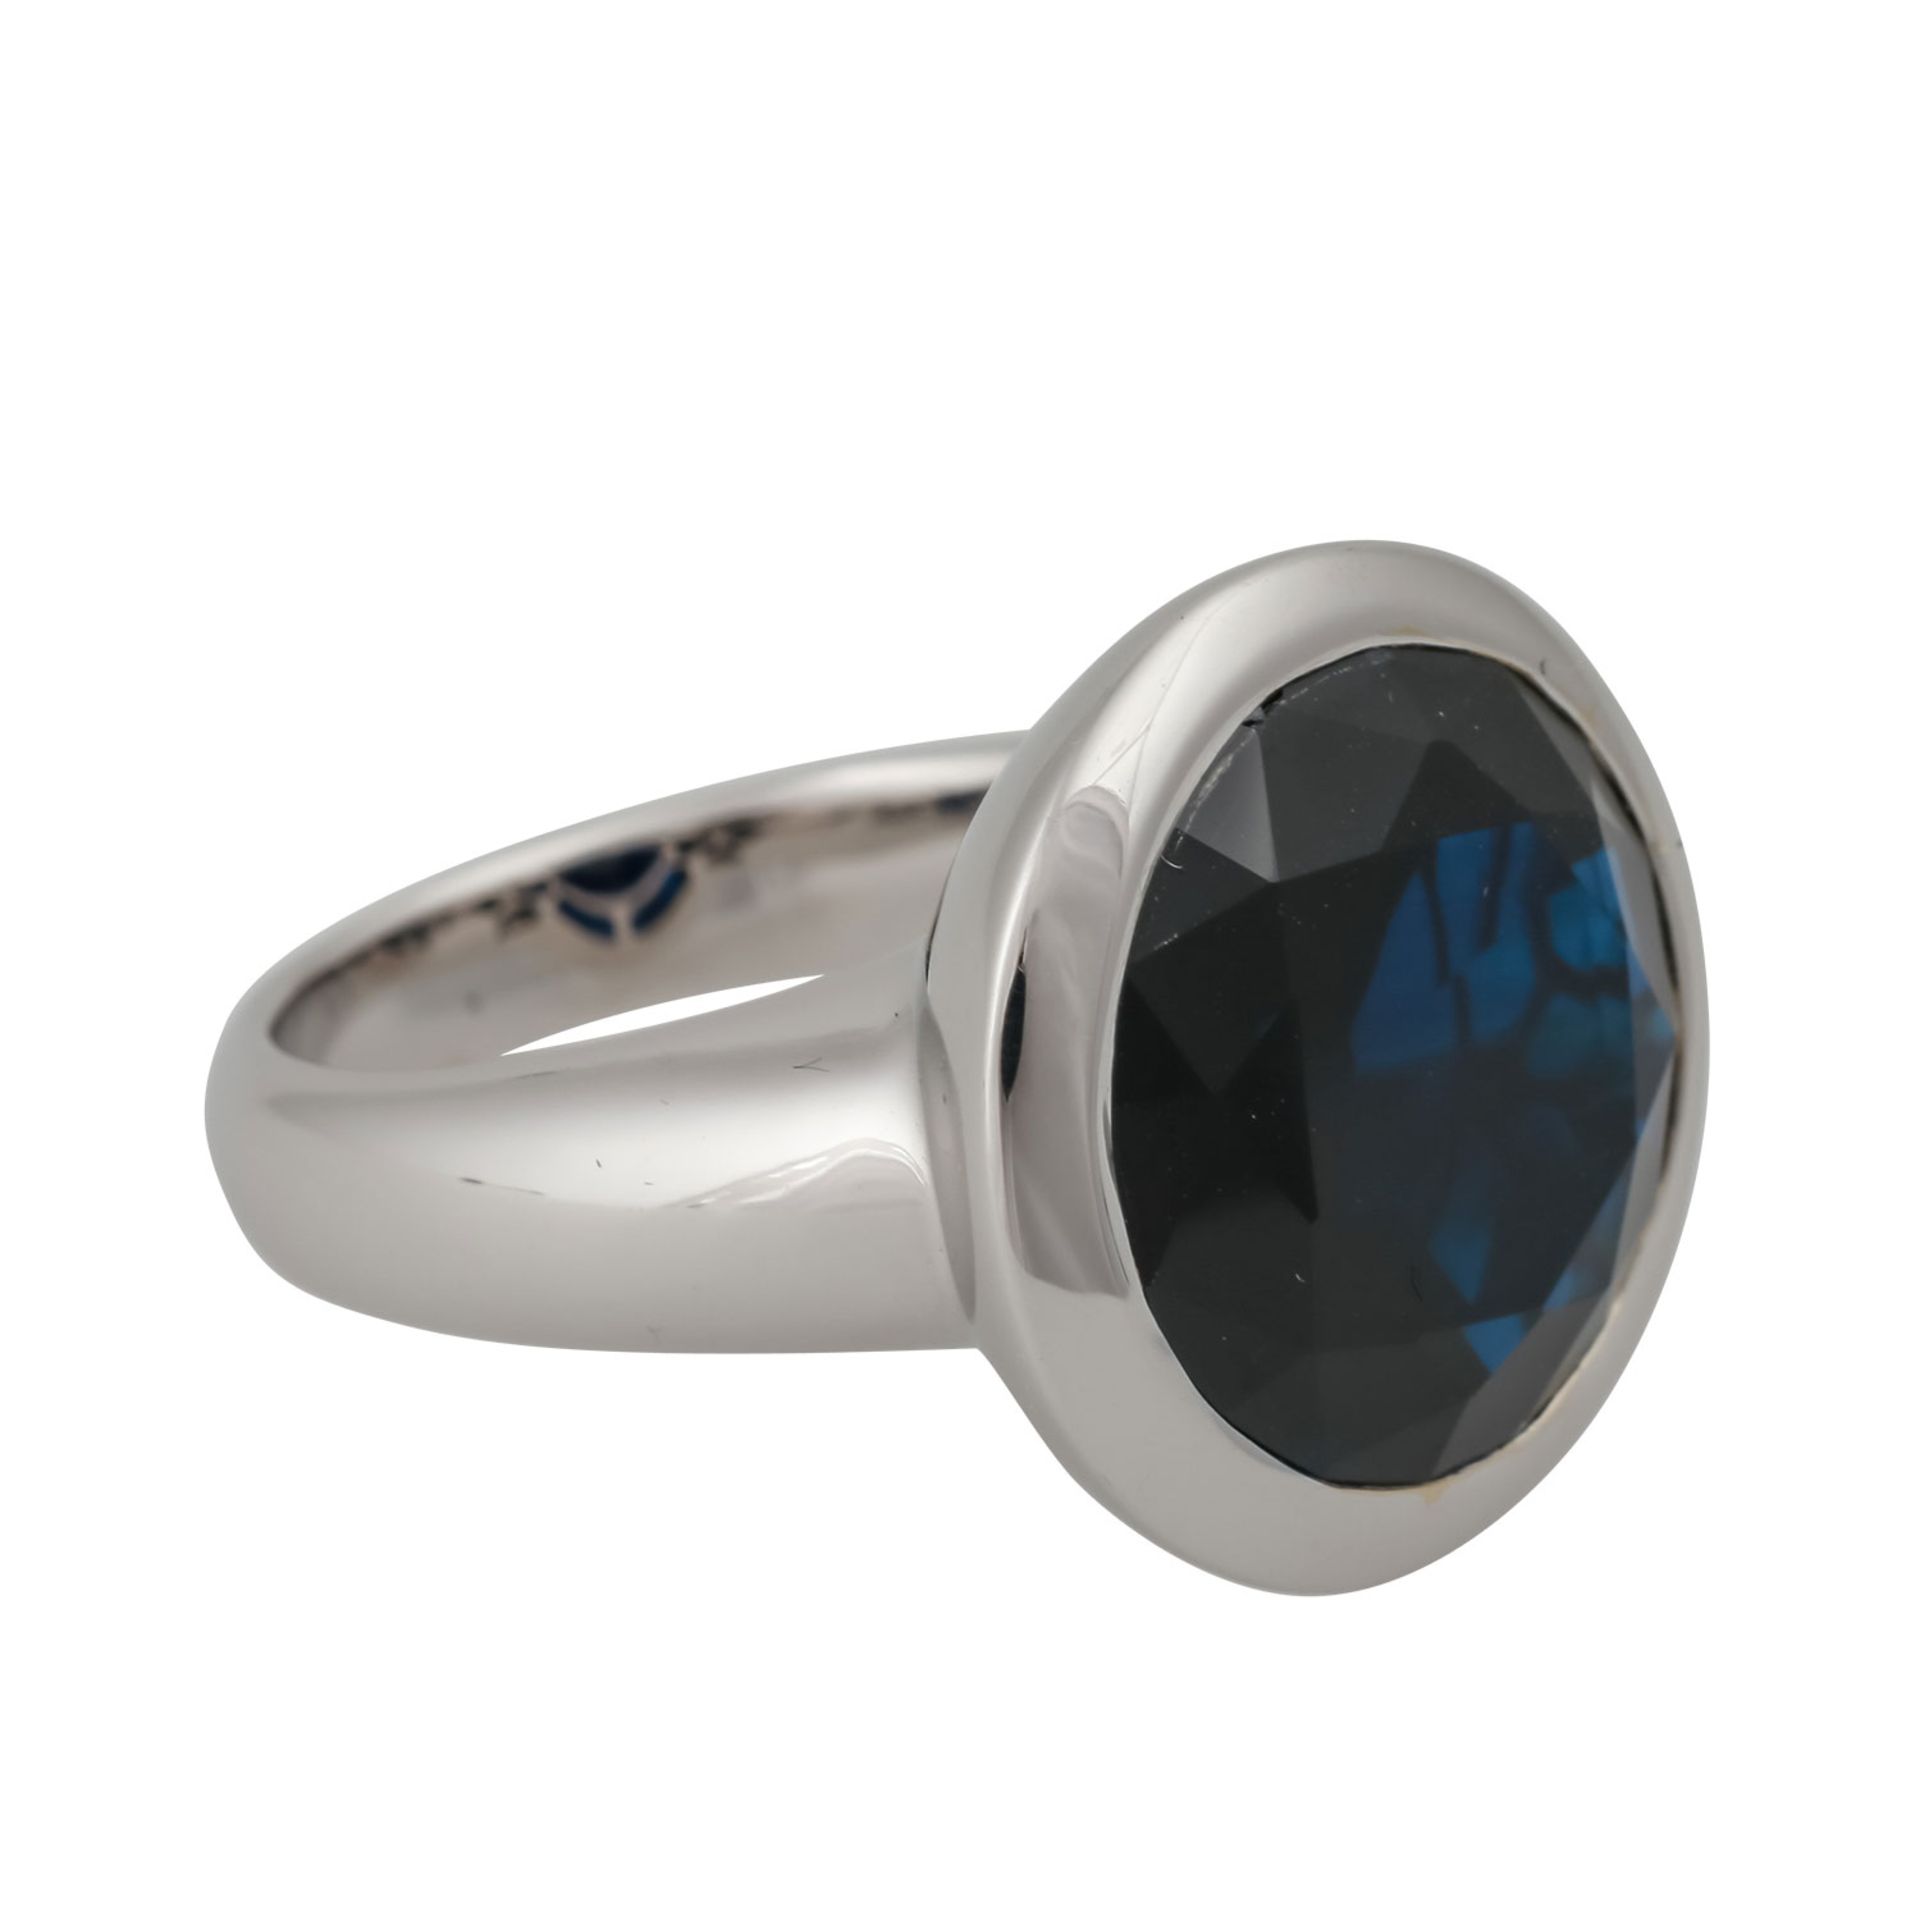 Ring mit dunkelblauem Saphir von 11,8 ct, rund facettiert, D: ca. 15 mm, WBW: 2.500 €, WG 18K, 11,7